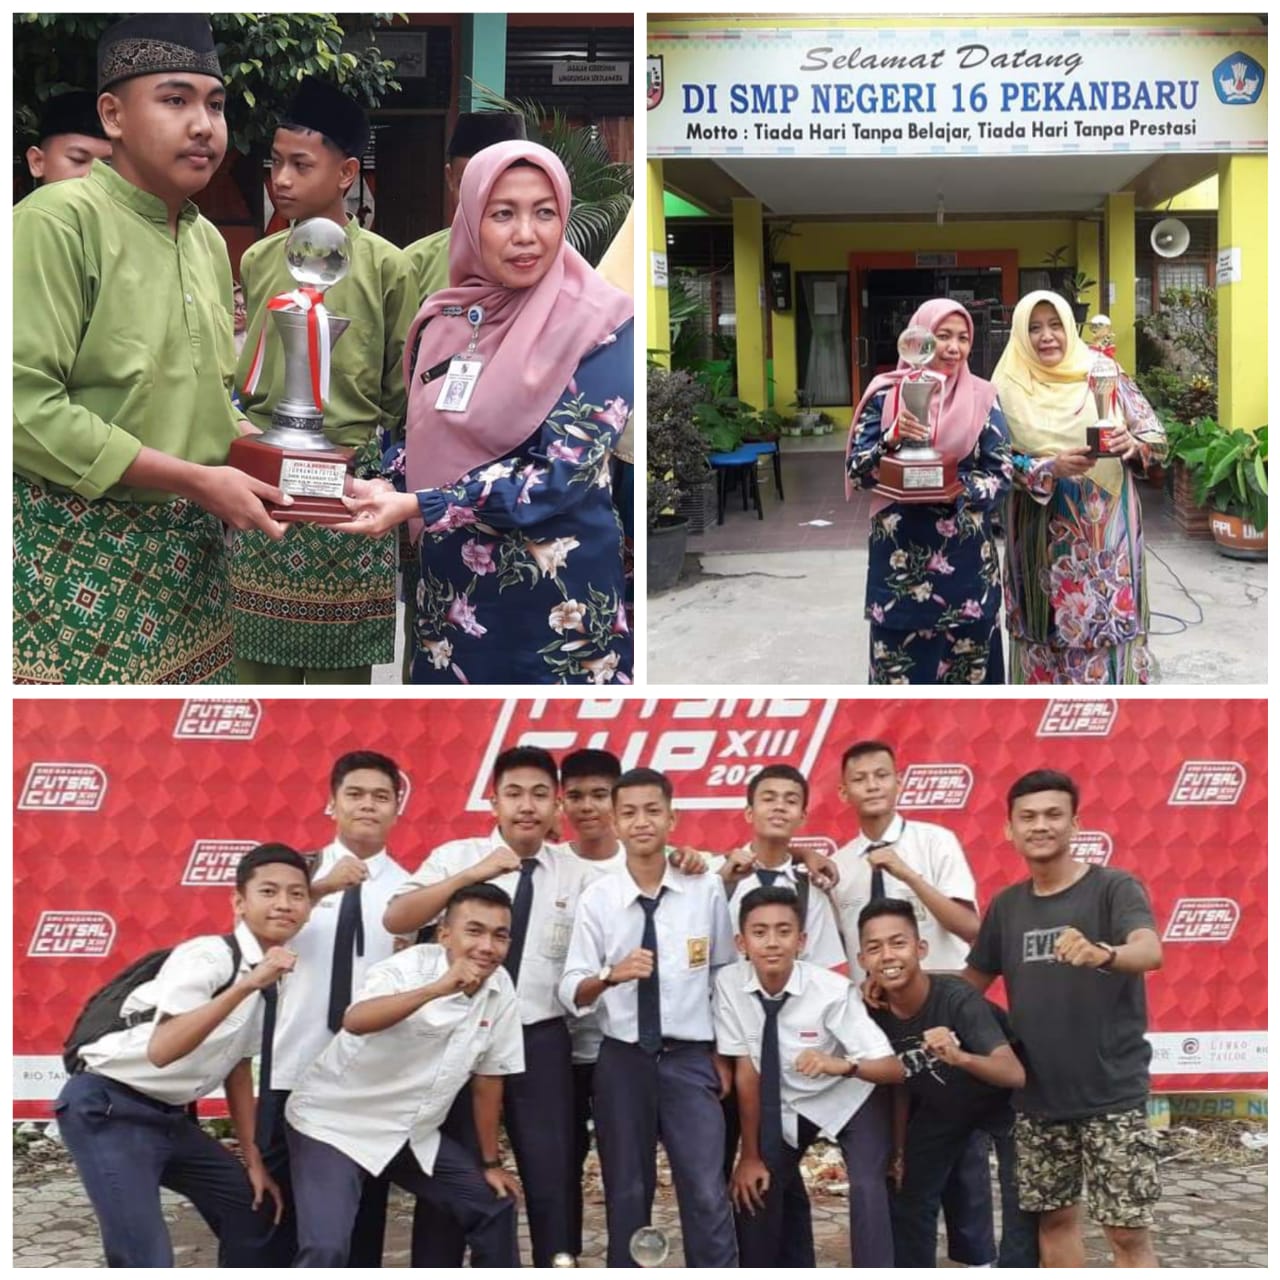 SMPN 16 Pekanbaru Boyong Piala Bergilir Futsal SMK Hasanah, Kepsek SMPN 16: 